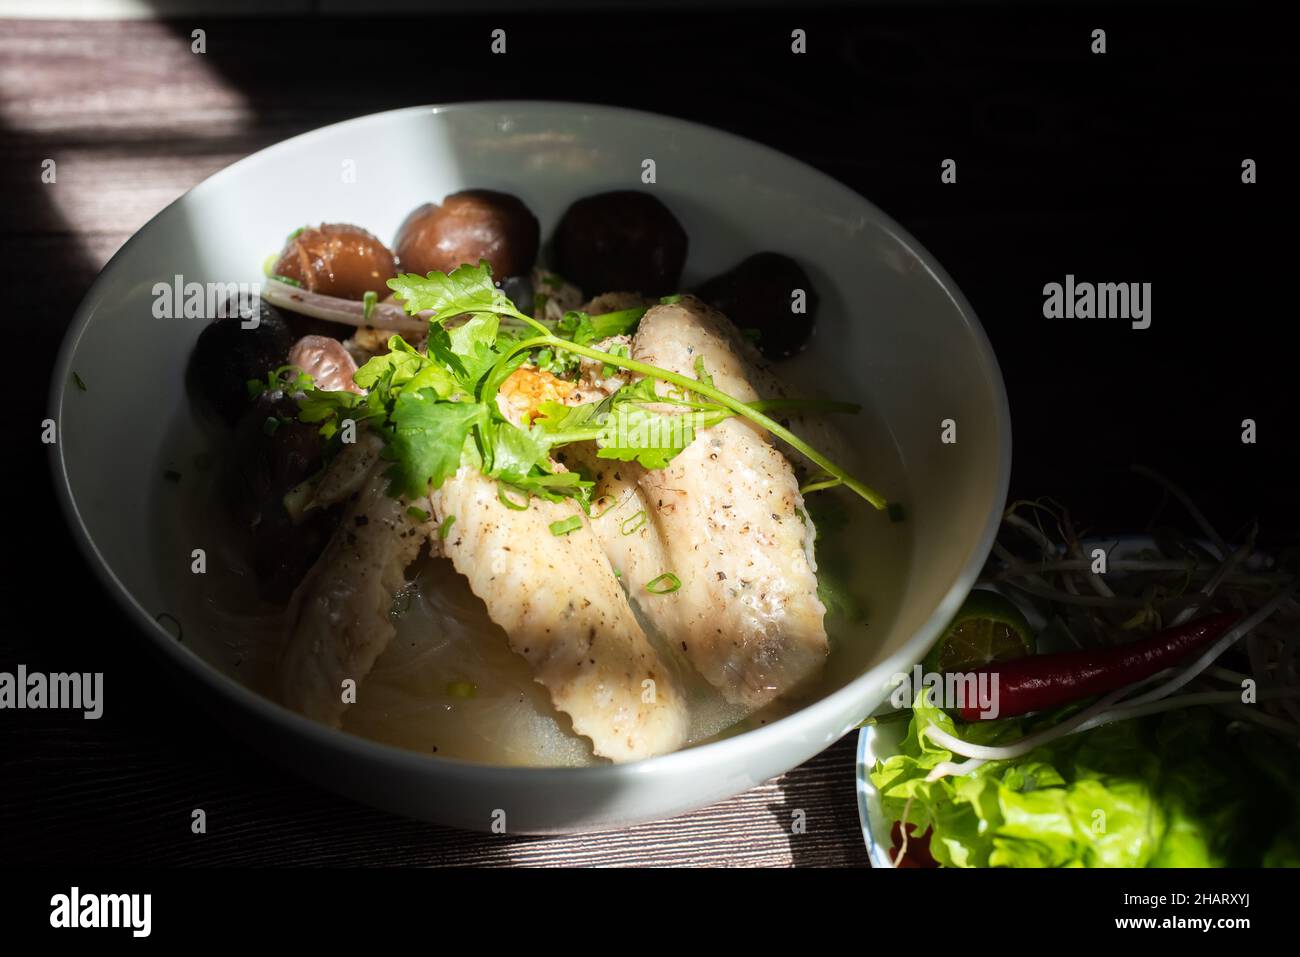 La soupe de nouilles aux champignons de poulet est un plat de petit déjeuner très populaire au Vietnam.Les ingrédients comprennent des nouilles de riz, des champignons, du poulet, des légumes et du spi Banque D'Images